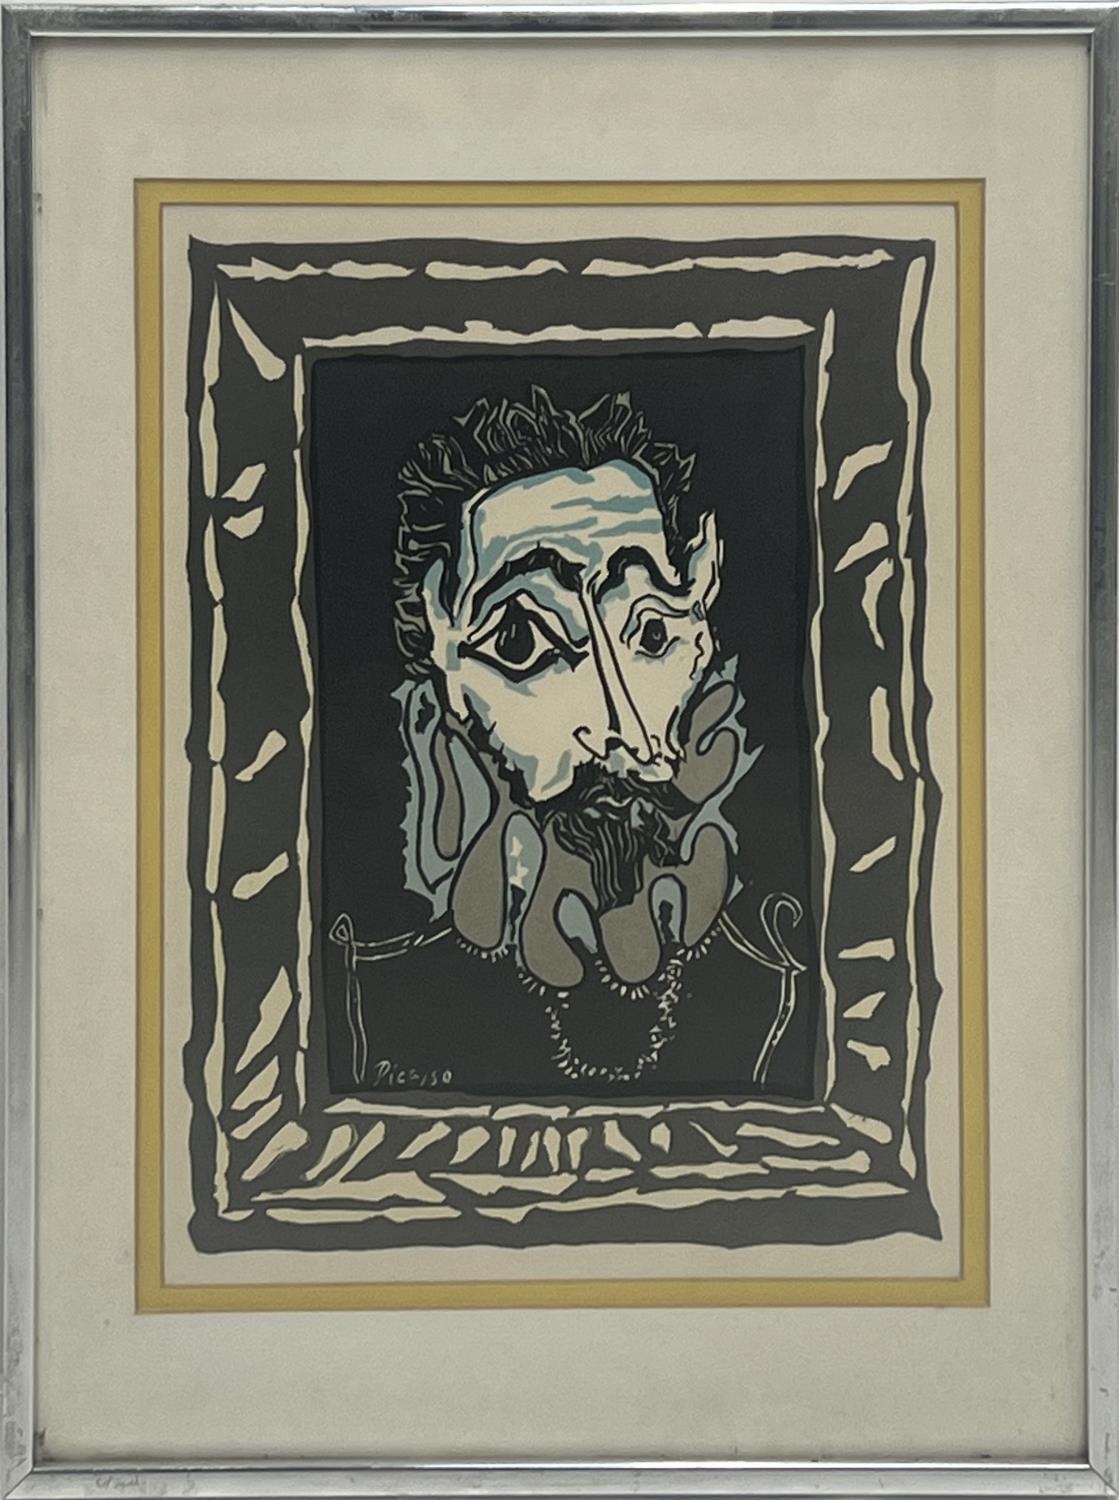 AFTER PABLO PICASSO (1881-1993), L'Homme a la Fraise, 1963', lithograph, 30cm x 22cm, framed.